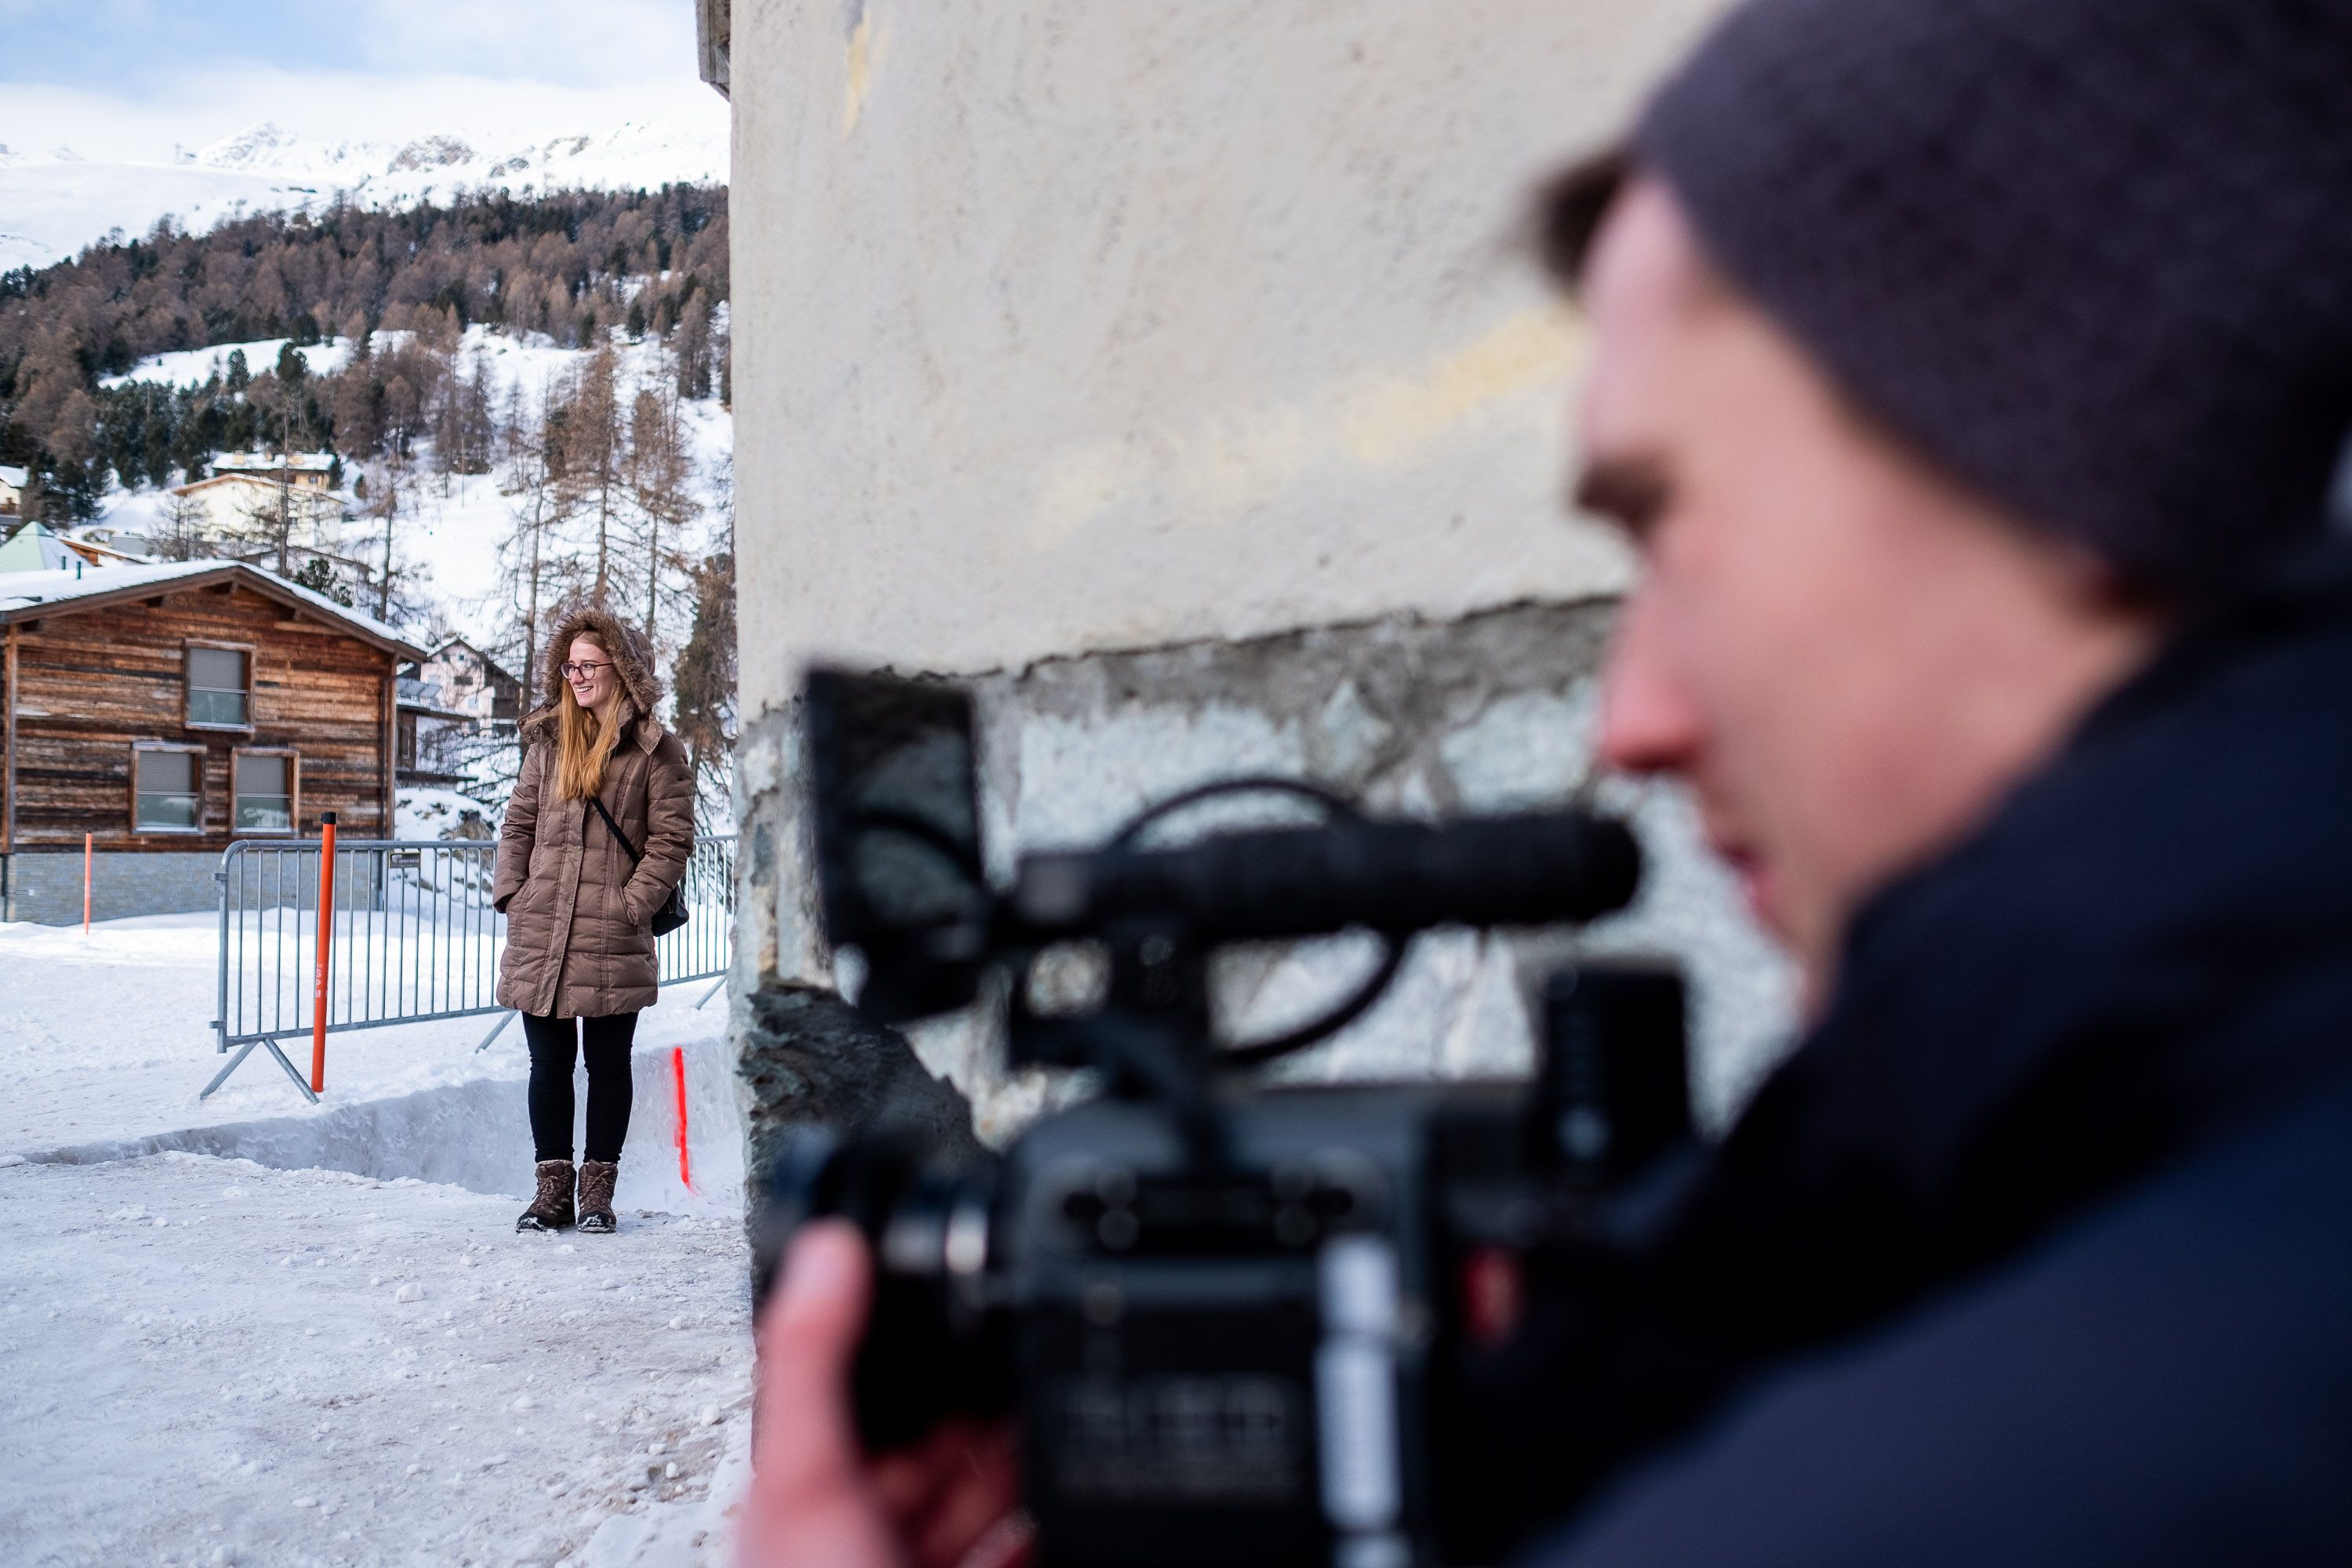 Filmdreh mit einer Red Scarlet 5K Kamera in der Schweiz - Filmproduktion Trailer im Schnee